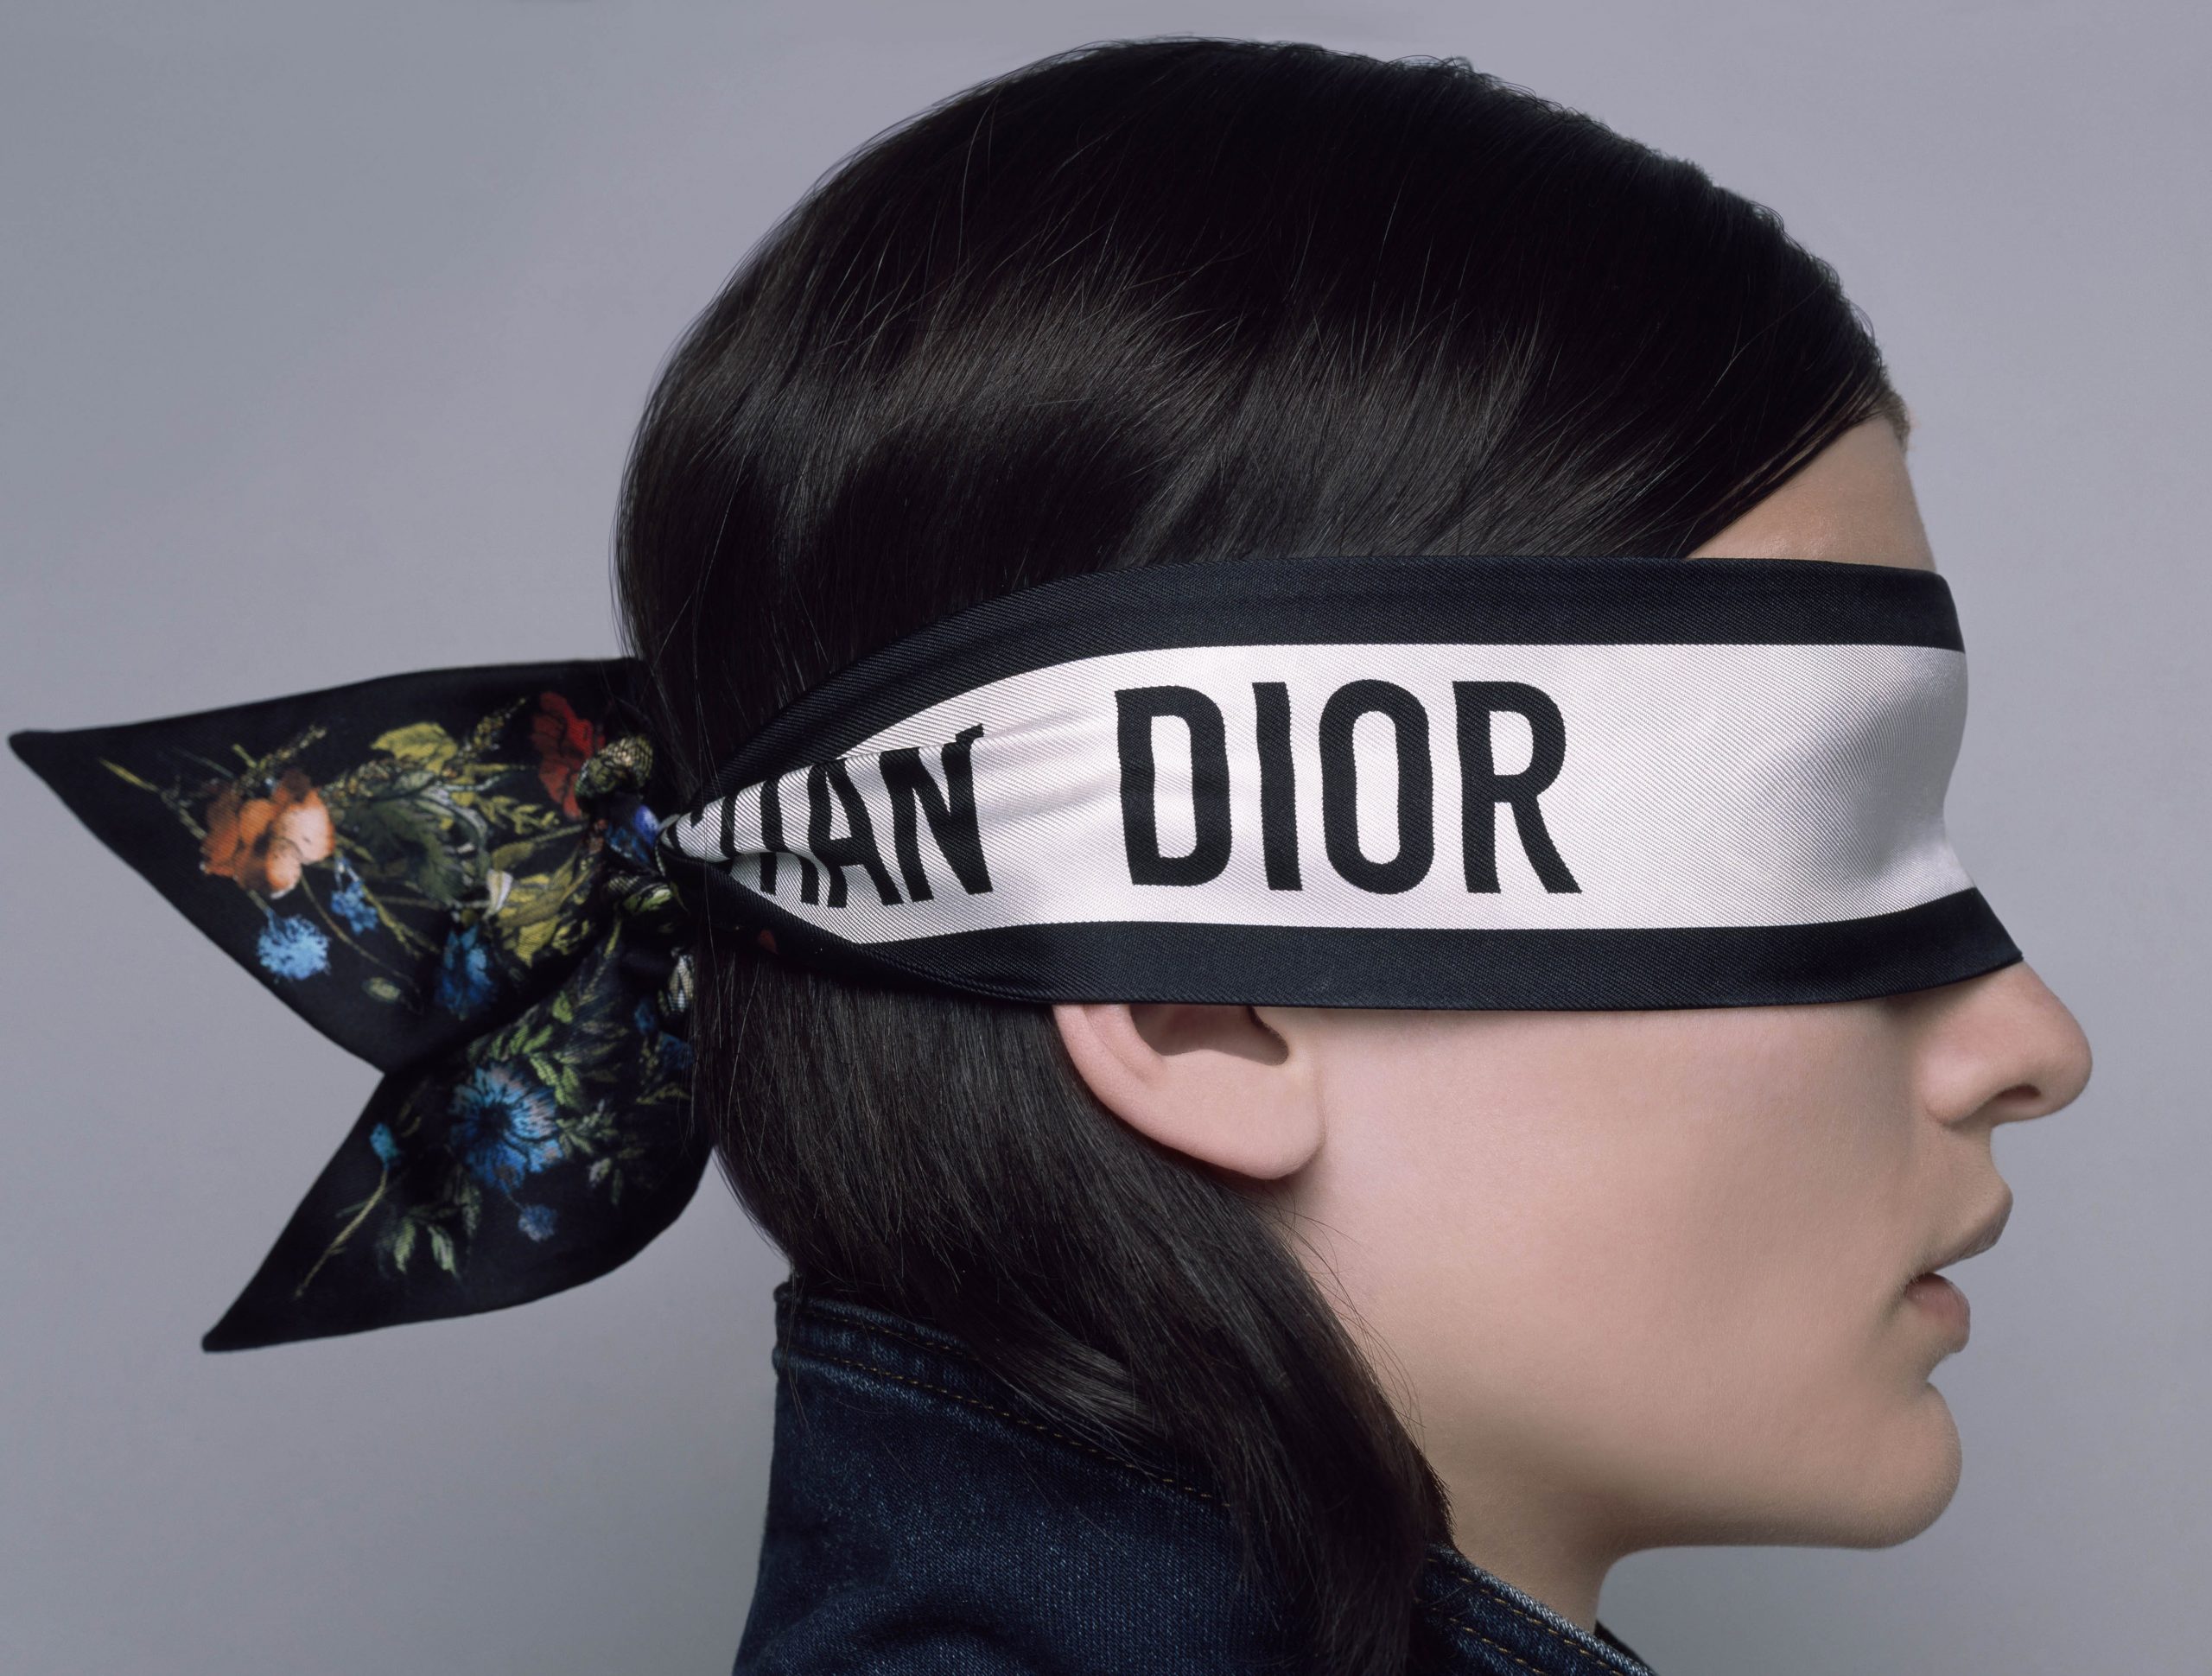 Satin Scarf Print Headband, Christian Dior Hair Scarf